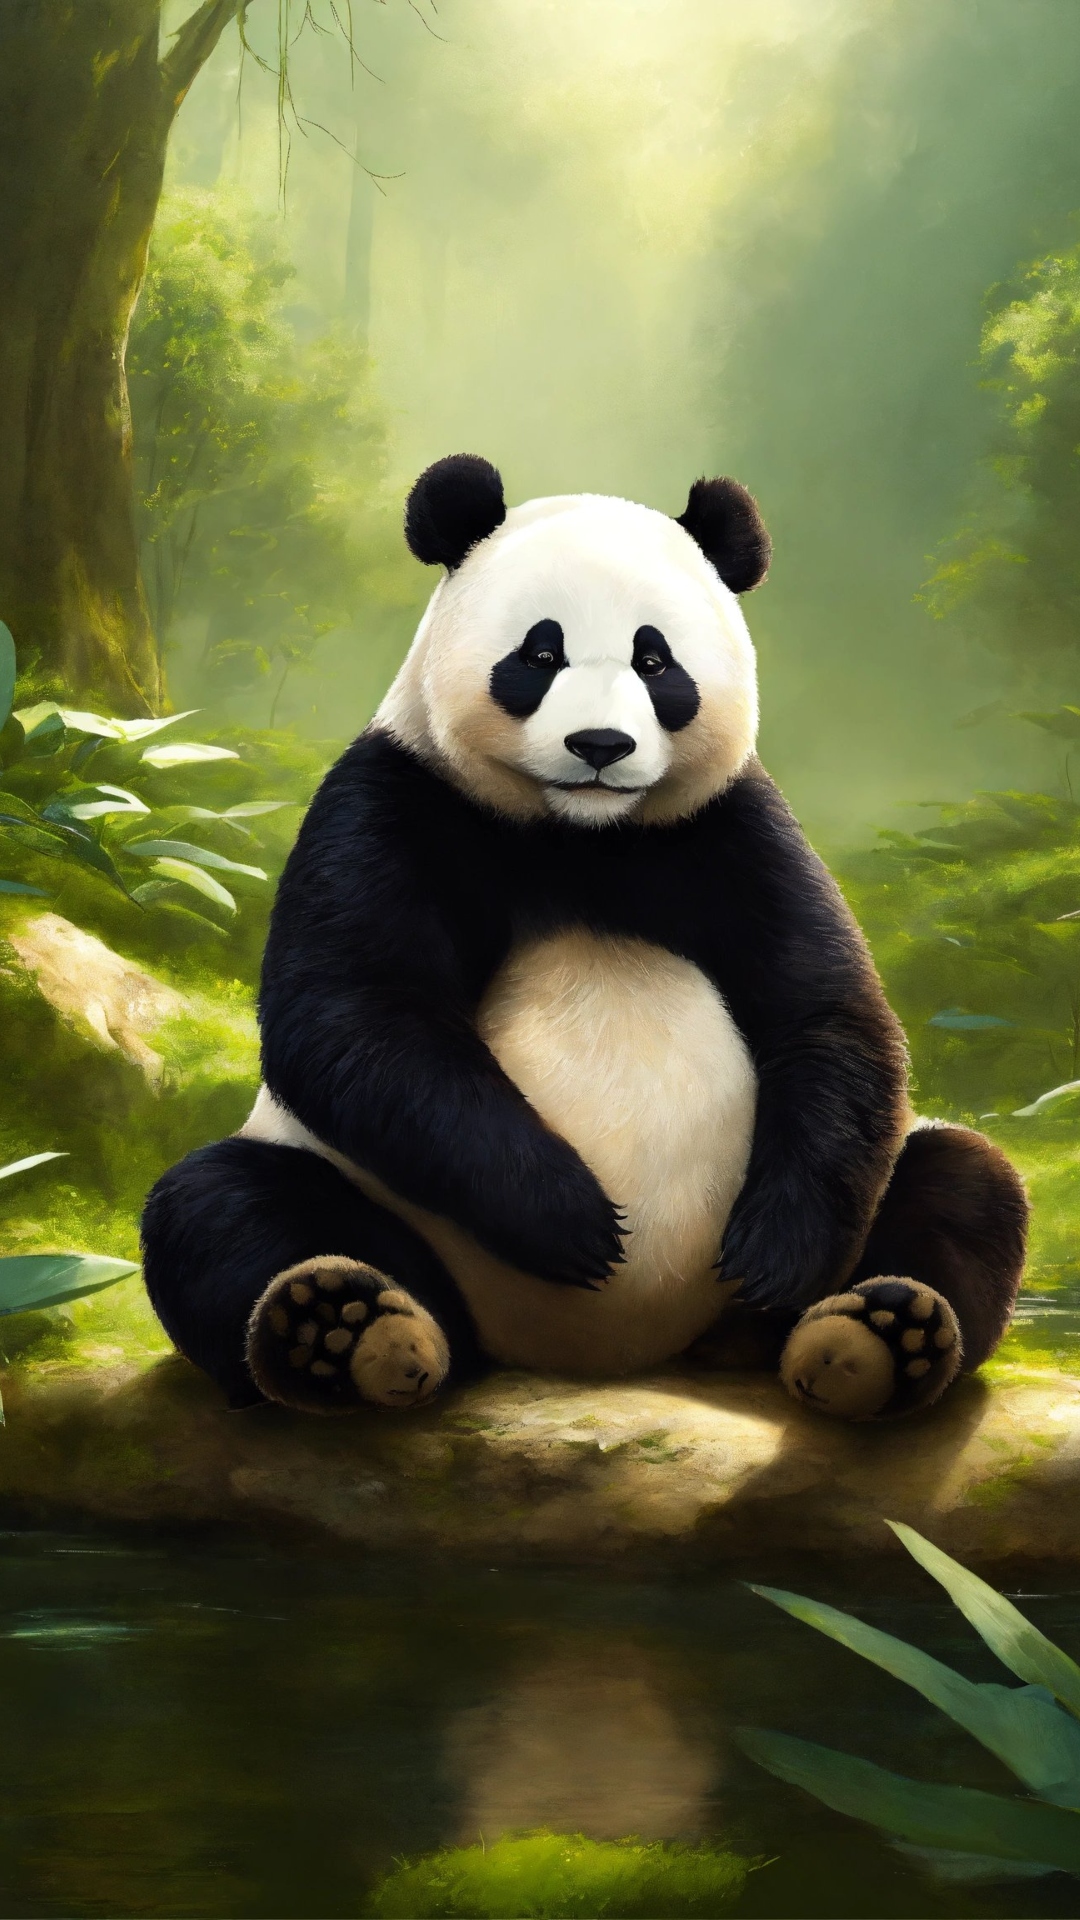 अमेरिका और चीन के बीच दोस्ती कराएगा क्यूट पांडा? है ना मजेदार